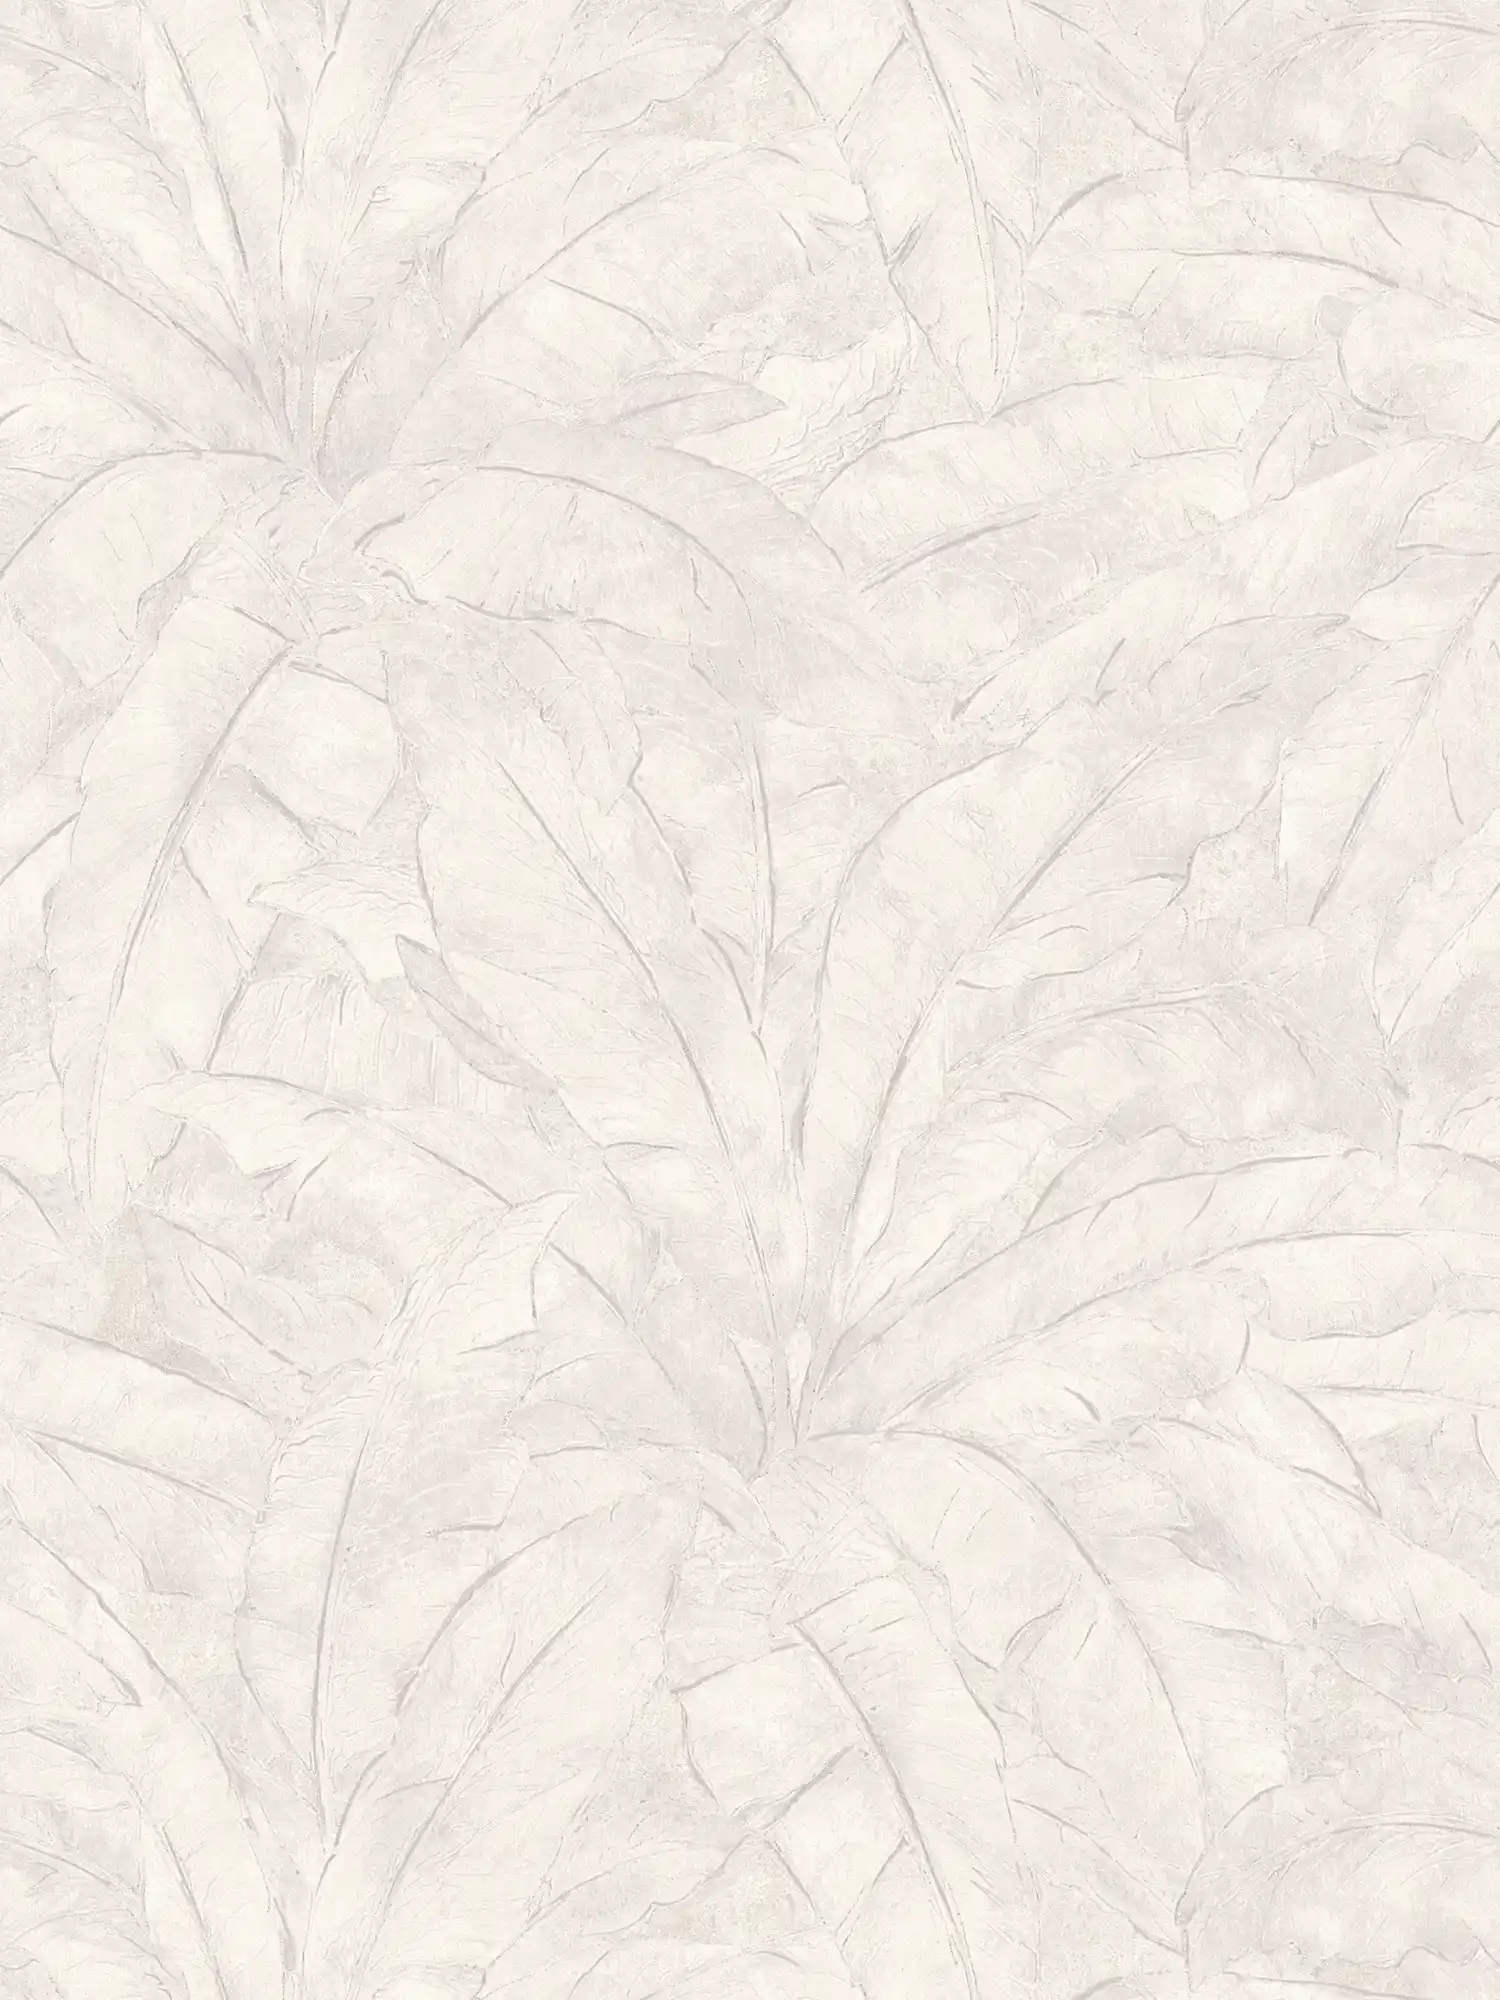 Papier peint jungle avec accent argenté - gris, argenté, blanc
